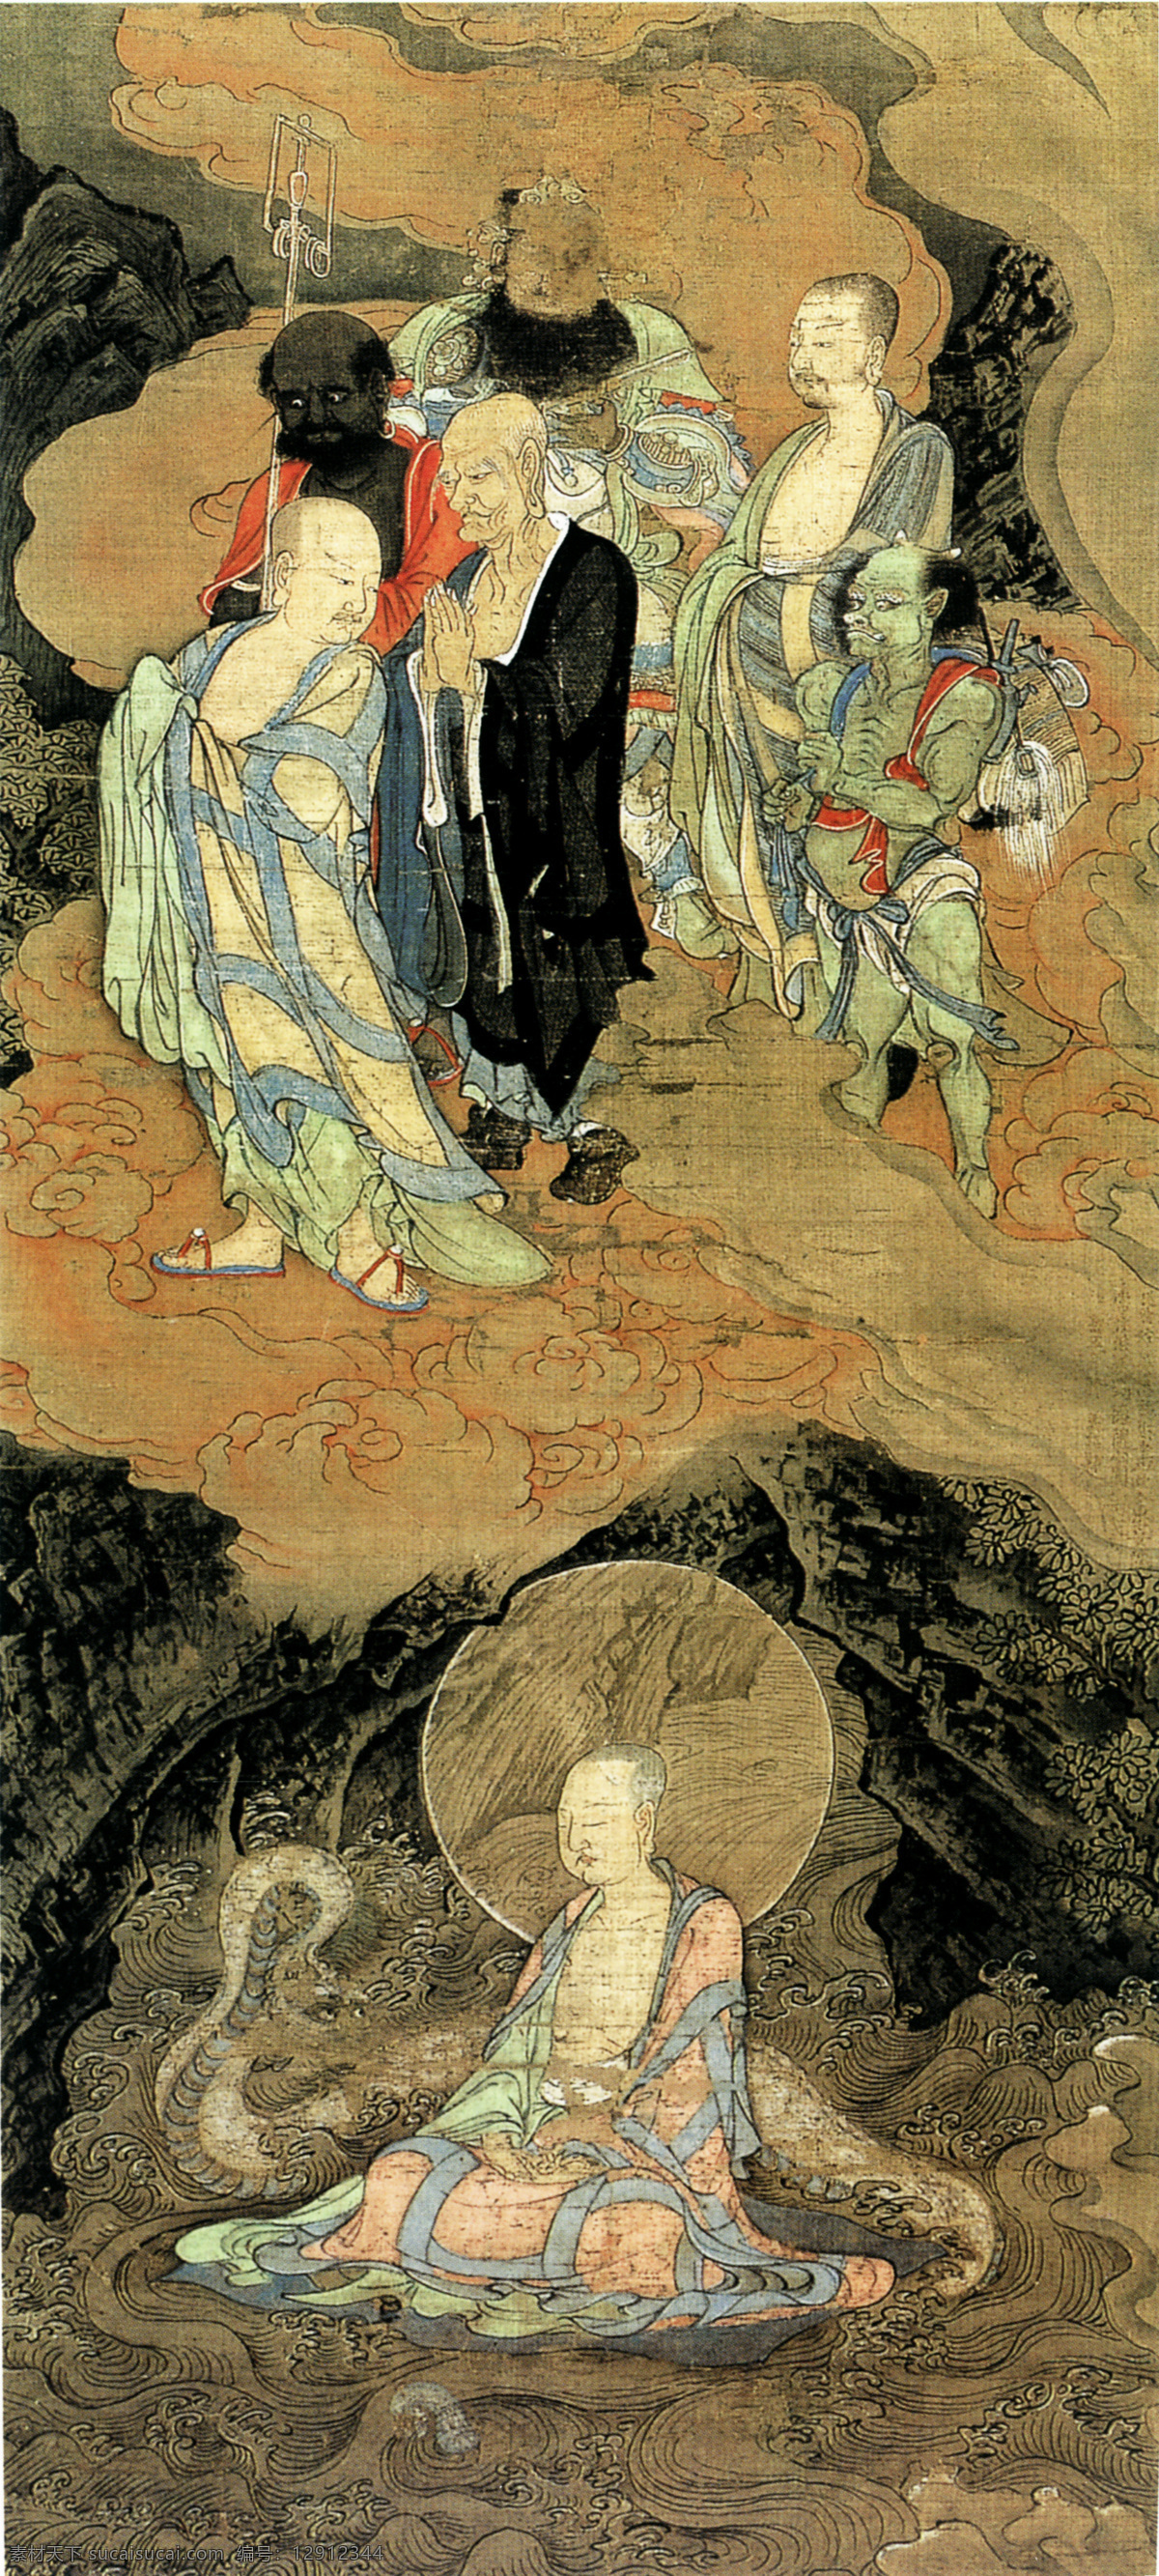 古代 佛教 人物 国画 油画 插画 手绘 素描 装饰画 无框画 中国风 油墨 破旧 书画文字 文化艺术